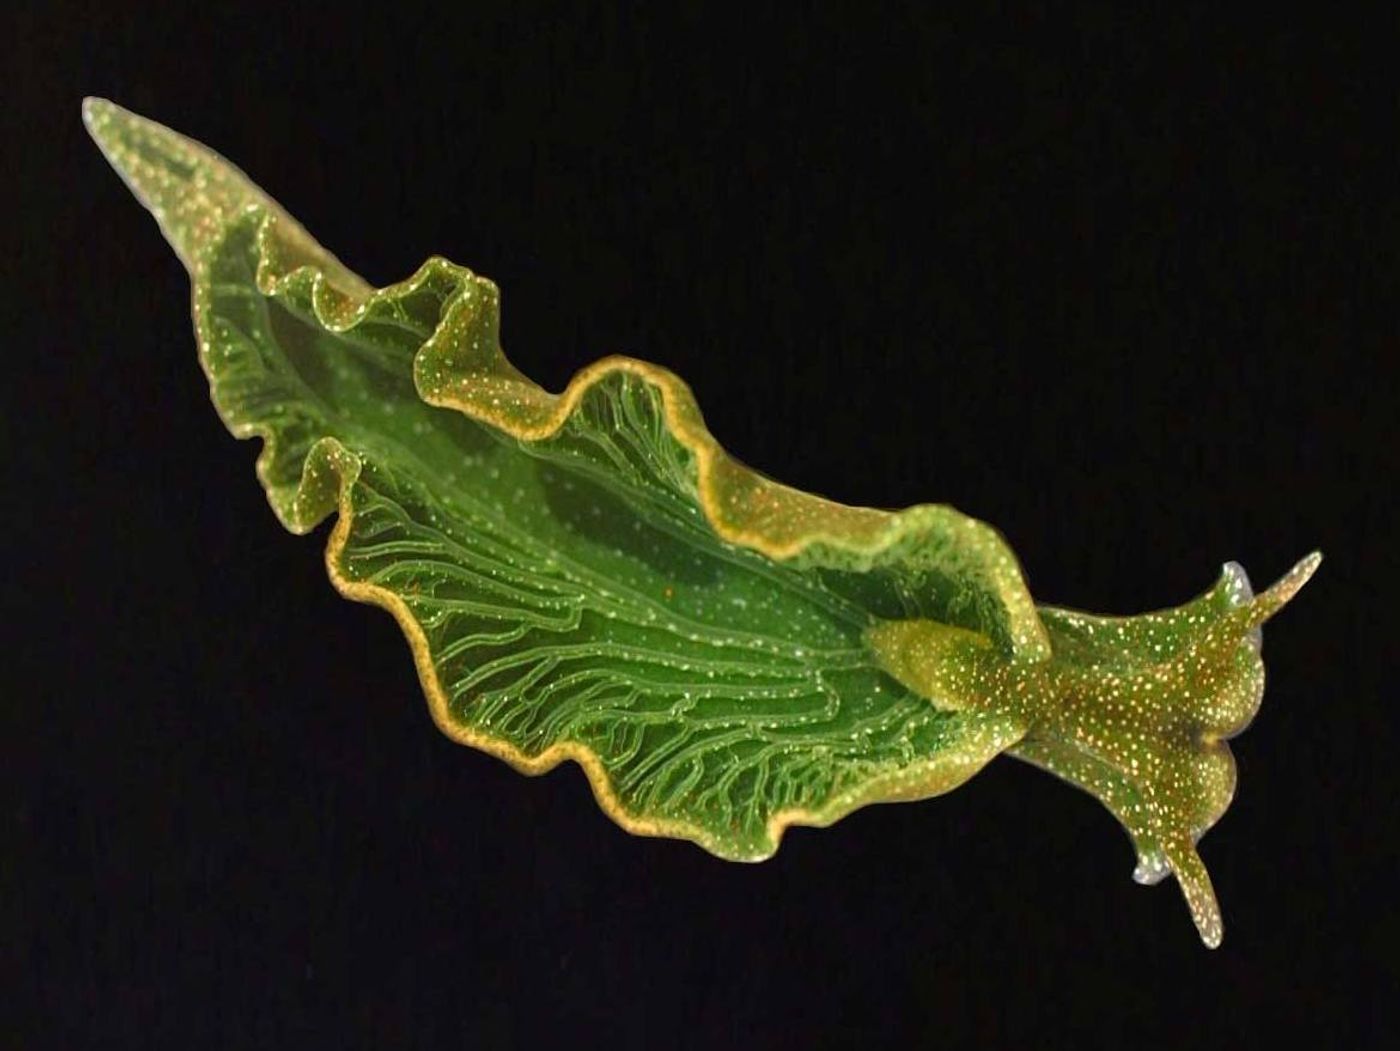 This sea slug steals chloroplasts from algae.